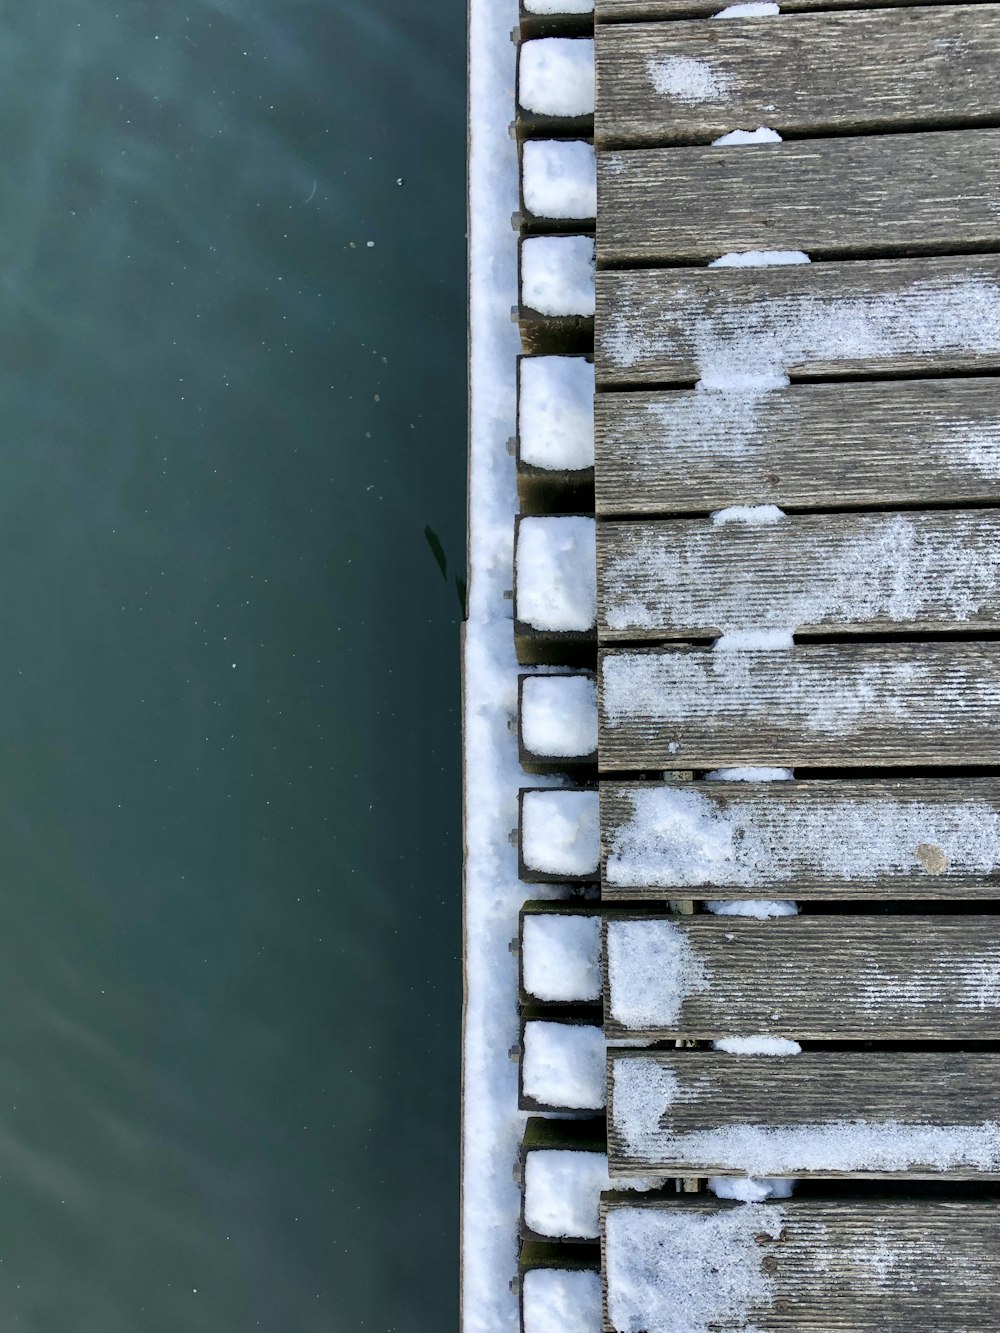 brown wooden dock over green water